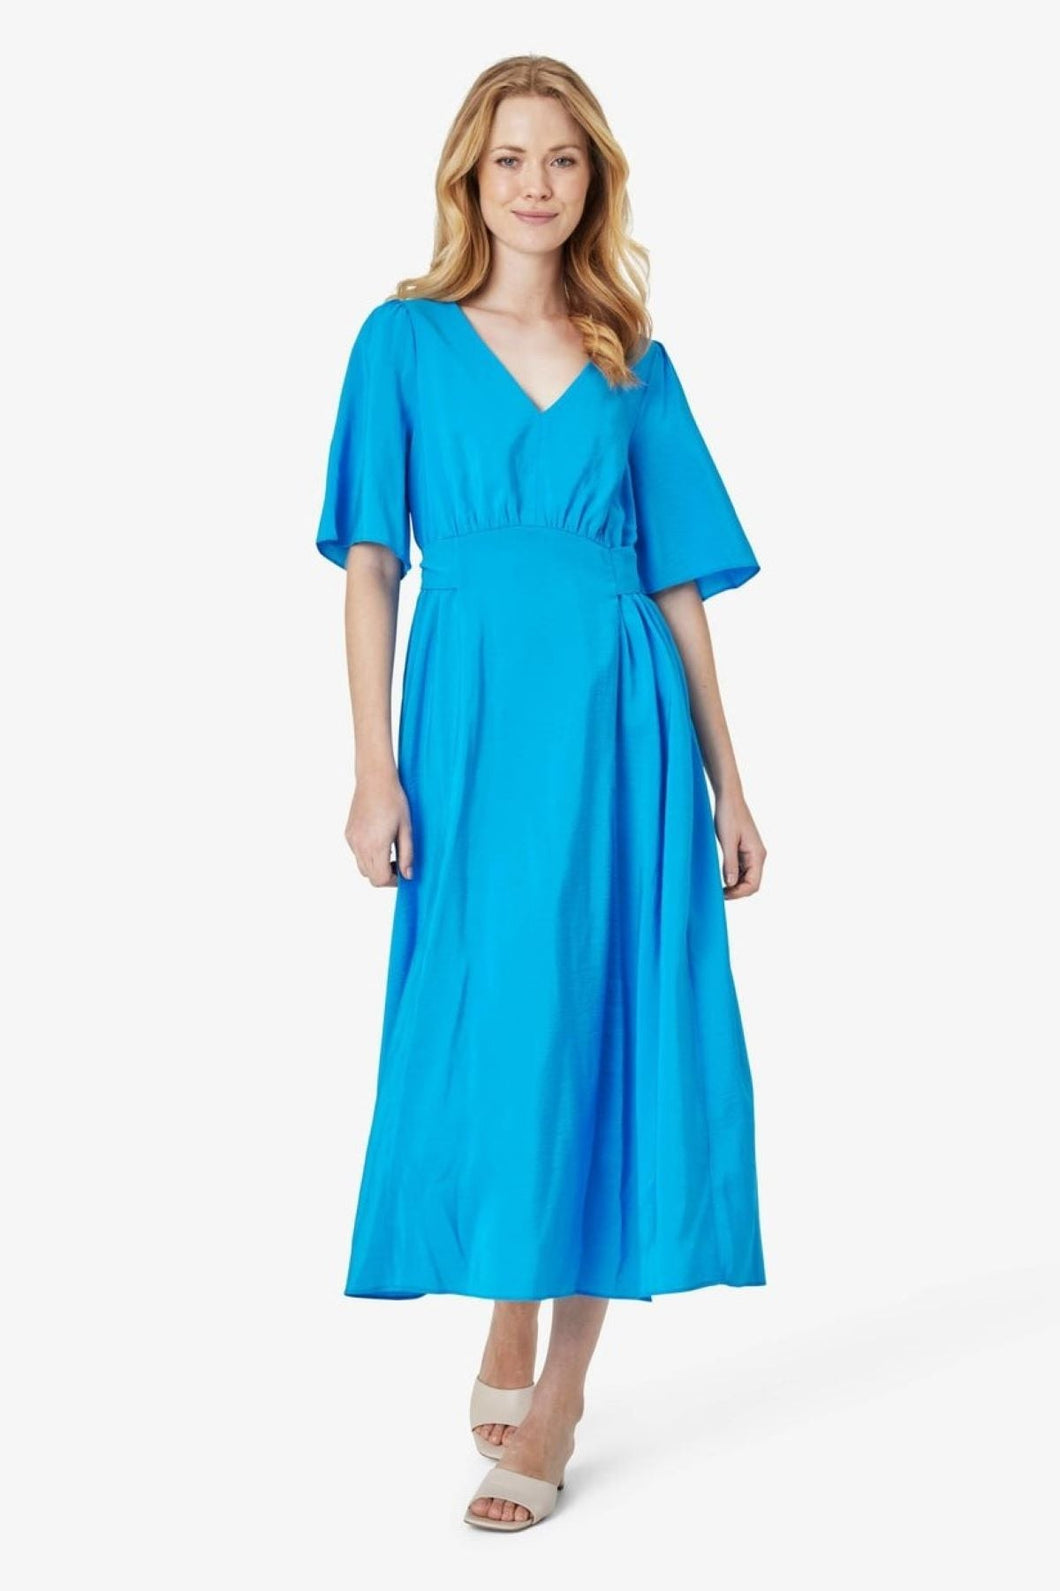 Noa Noa Fione Dress - Brilliant Blue  Hyde Boutique   